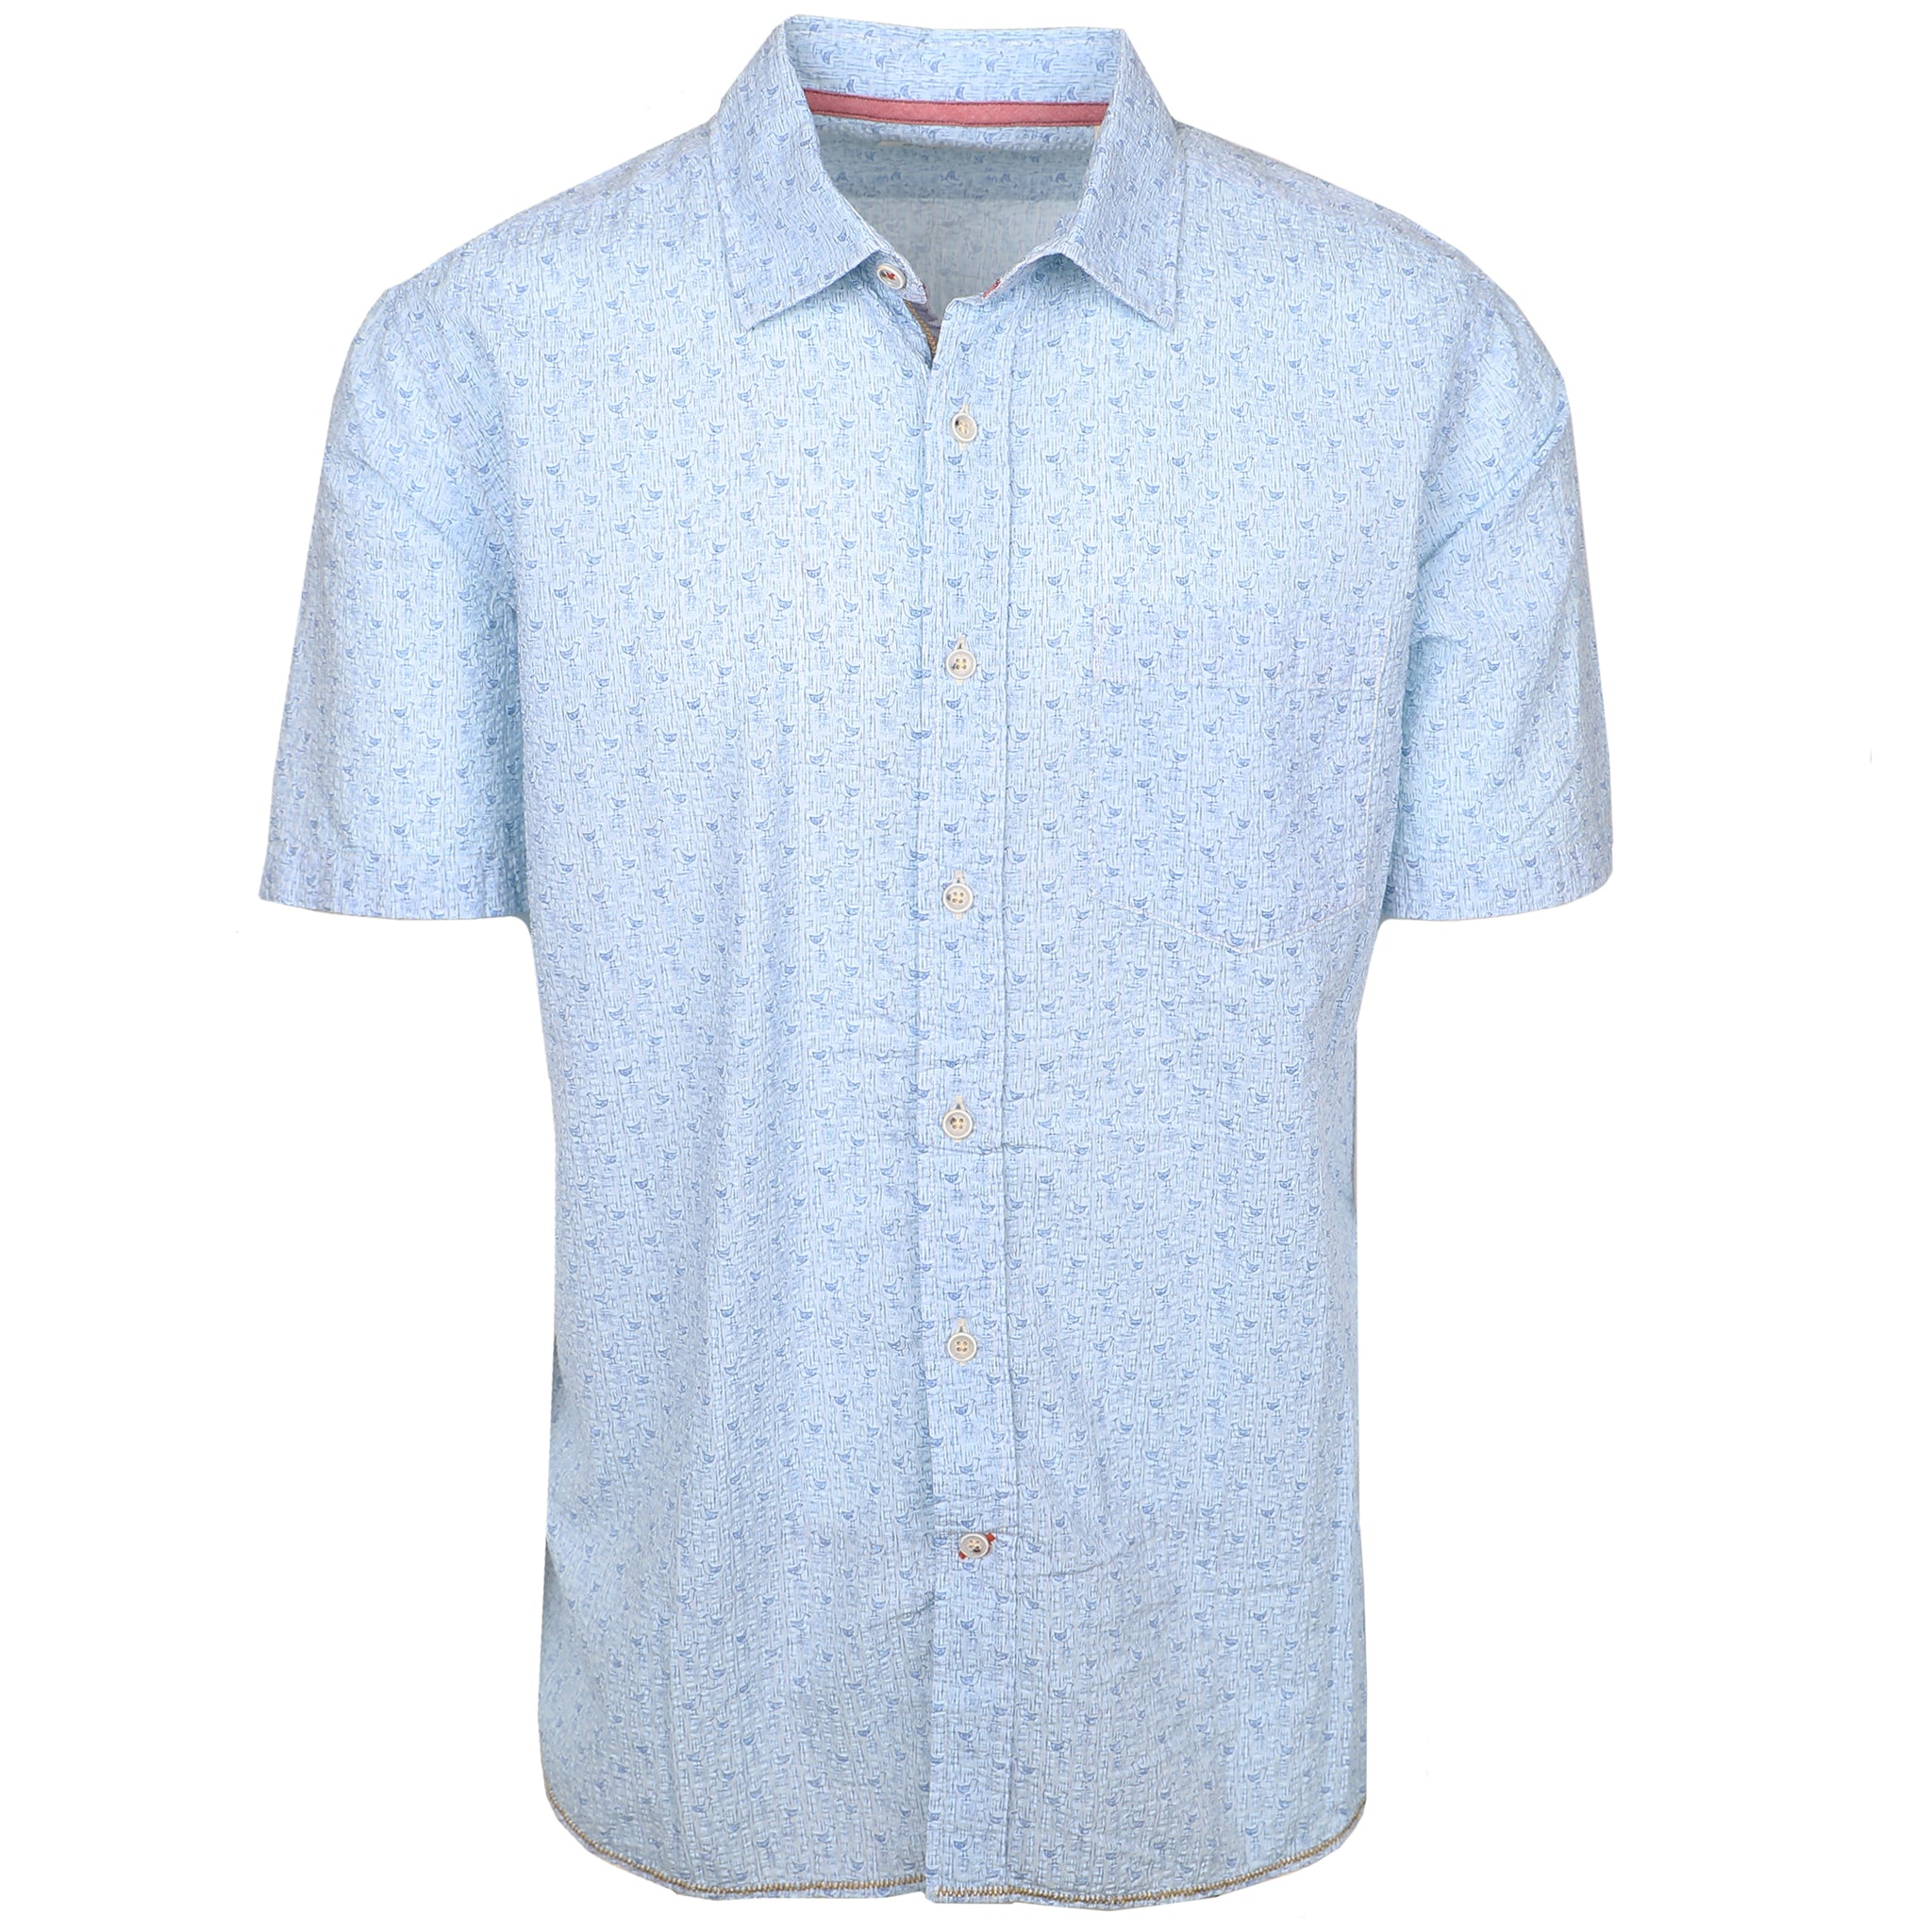 Men's Short Sleeve Shirts | Paestum Lt. Blue Early Bird Short Sleeve ...